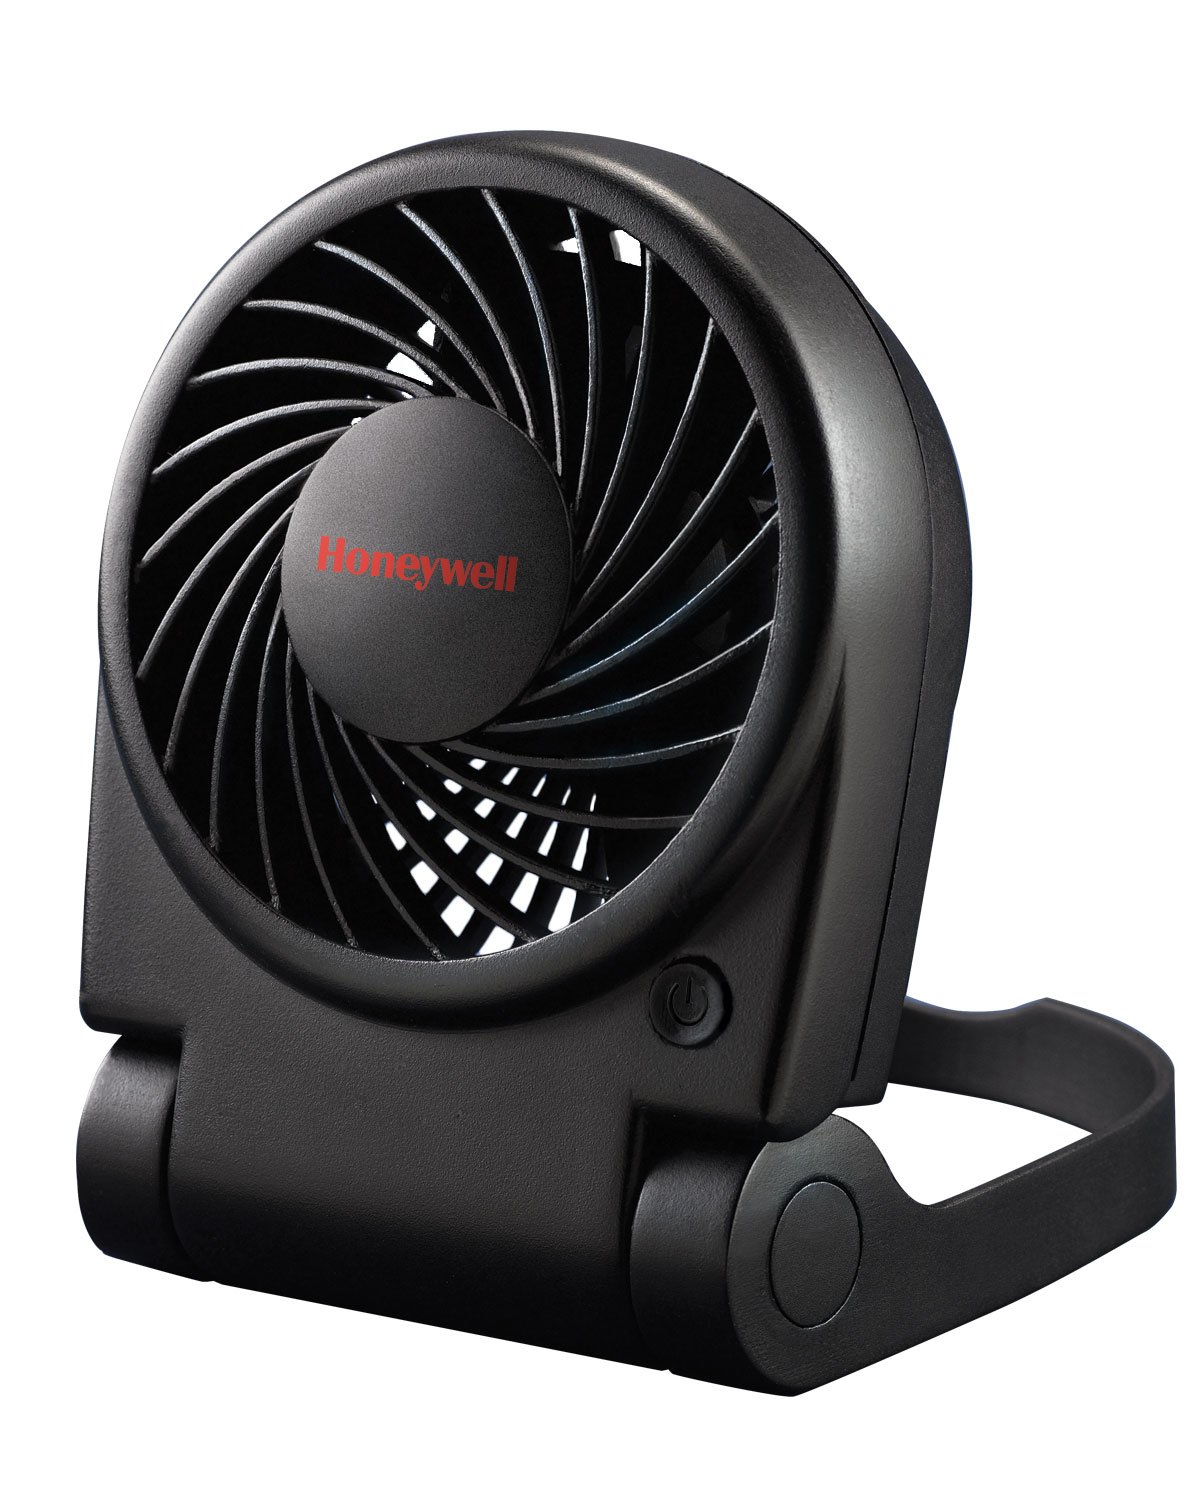 A portable fan